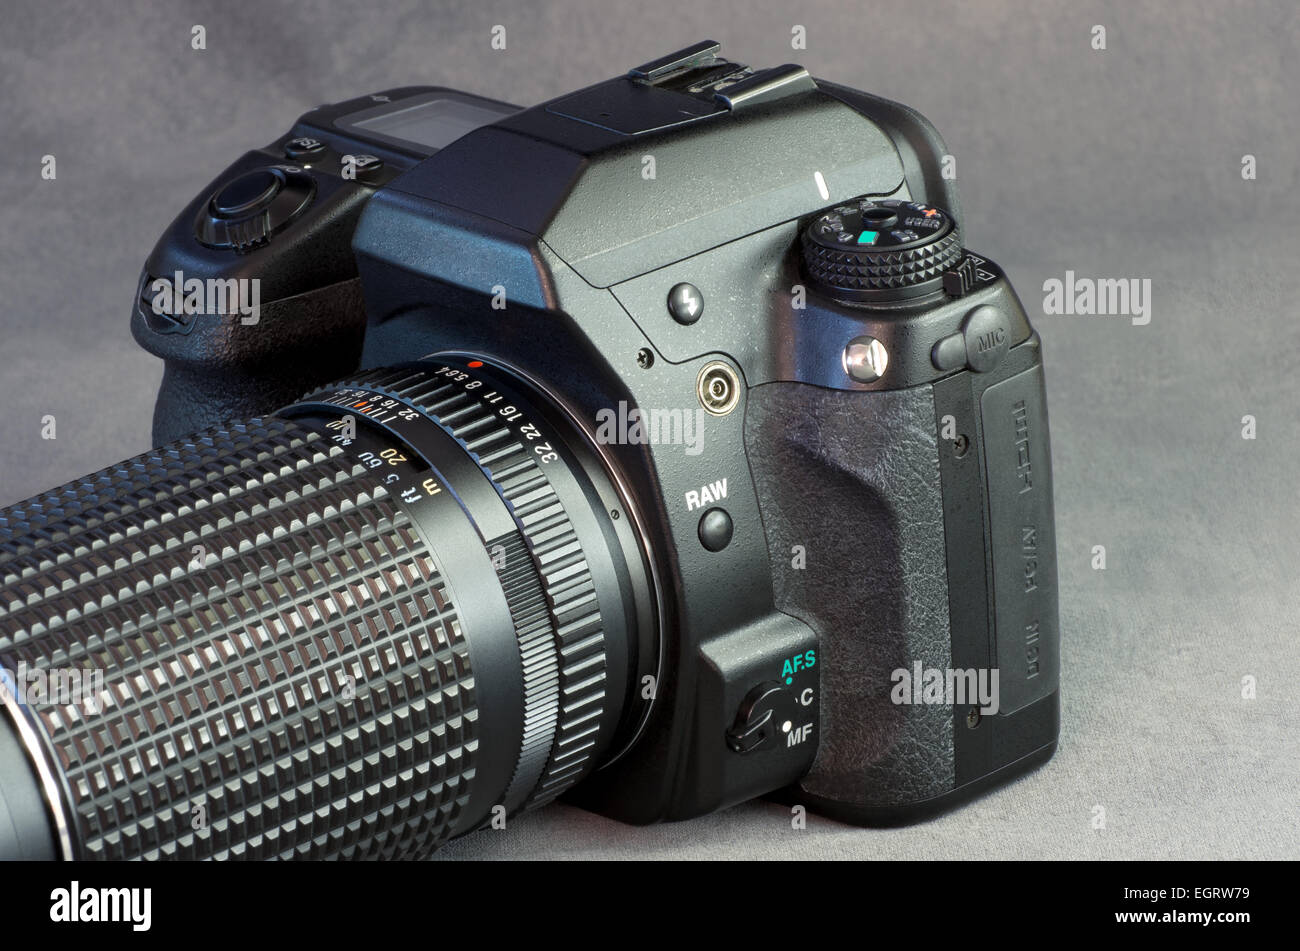 Fotocamera reflex digitale e la lente closeup contro uno sfondo grigio Foto Stock